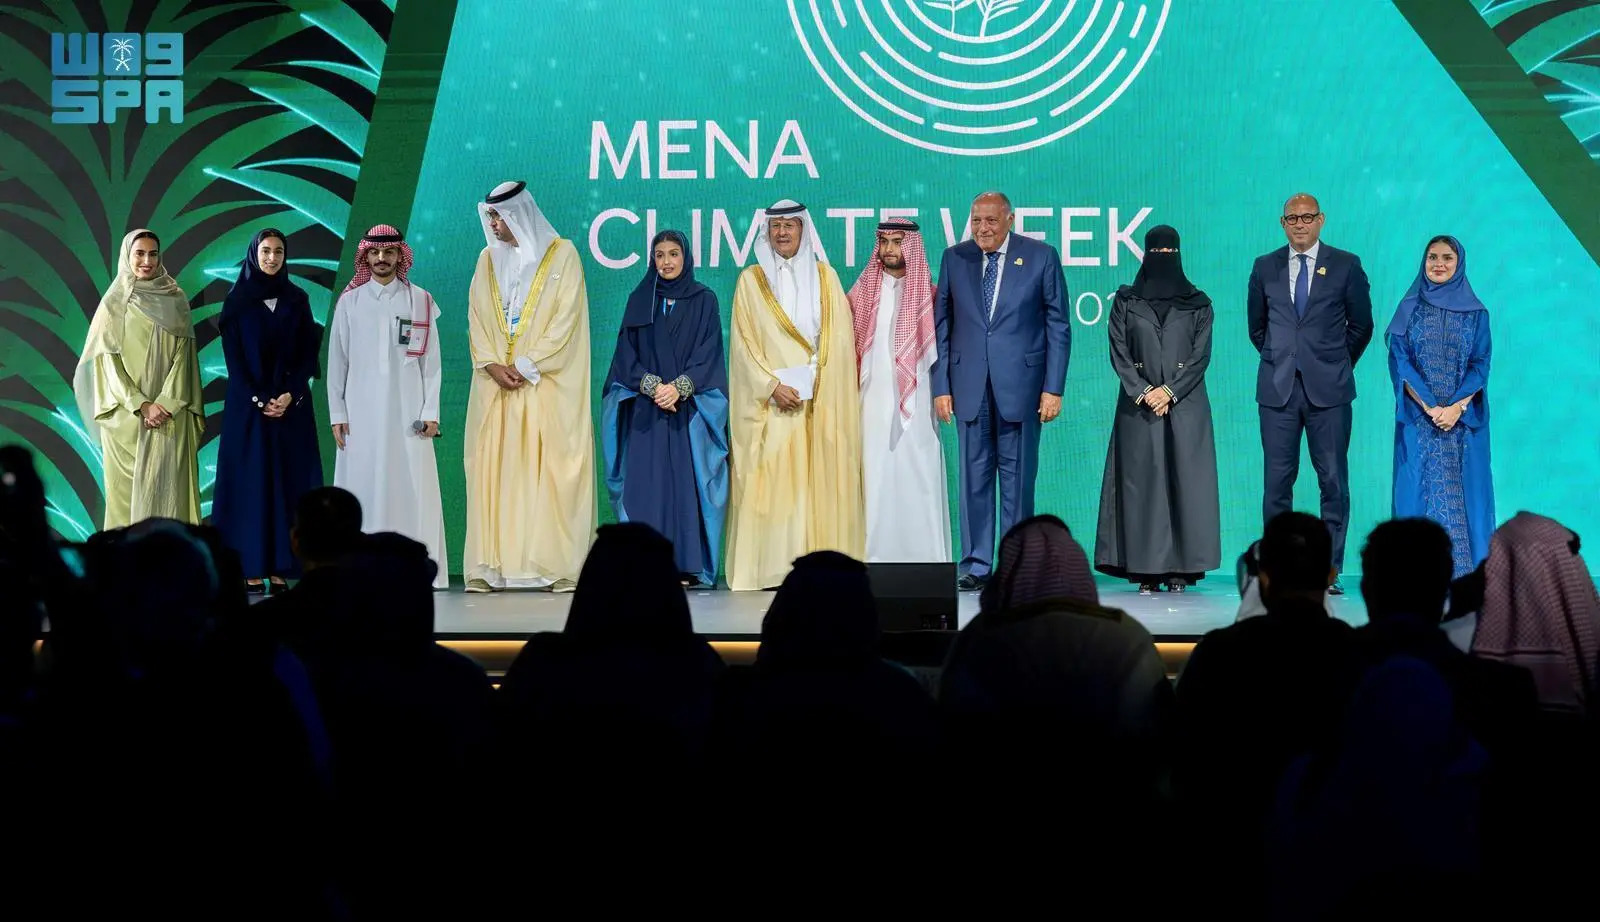 سمو وزير الطاقة يفتتح أعمال "أسبوع المناخ في منطقة الشرق الأوسط وشمال أفريقيا لعام 2023م